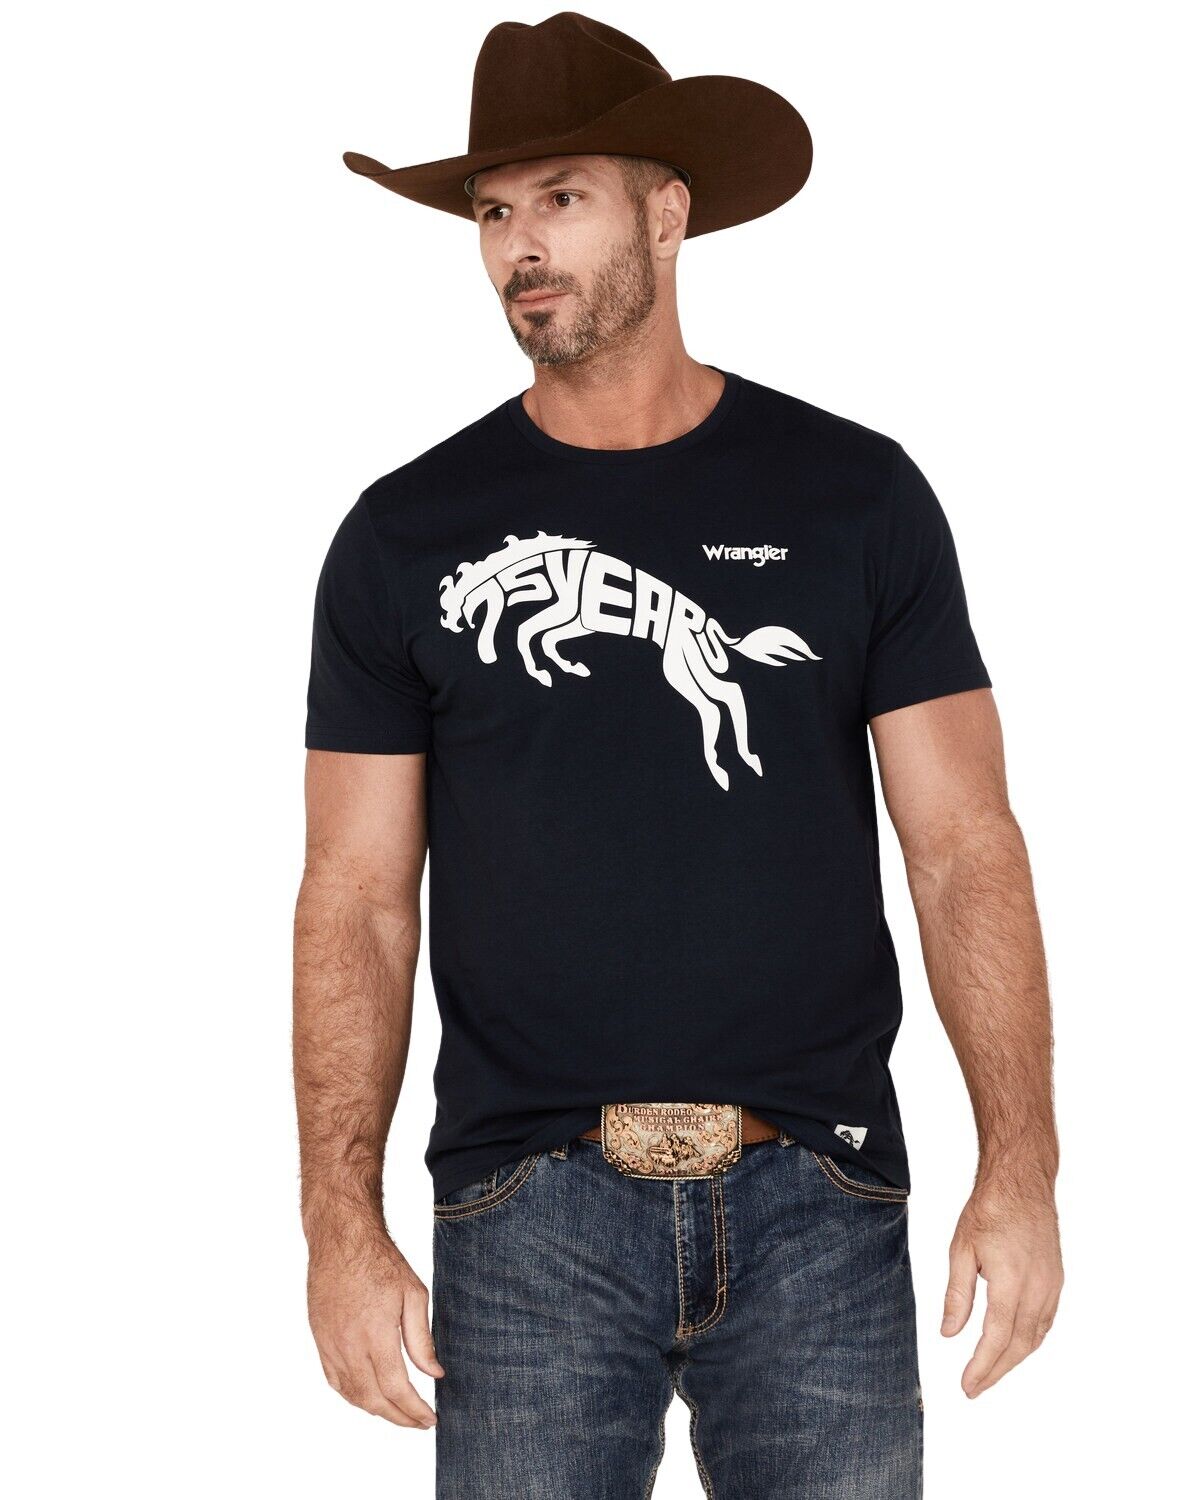 Wrangler Men's 75 Years Horse T-Shirt